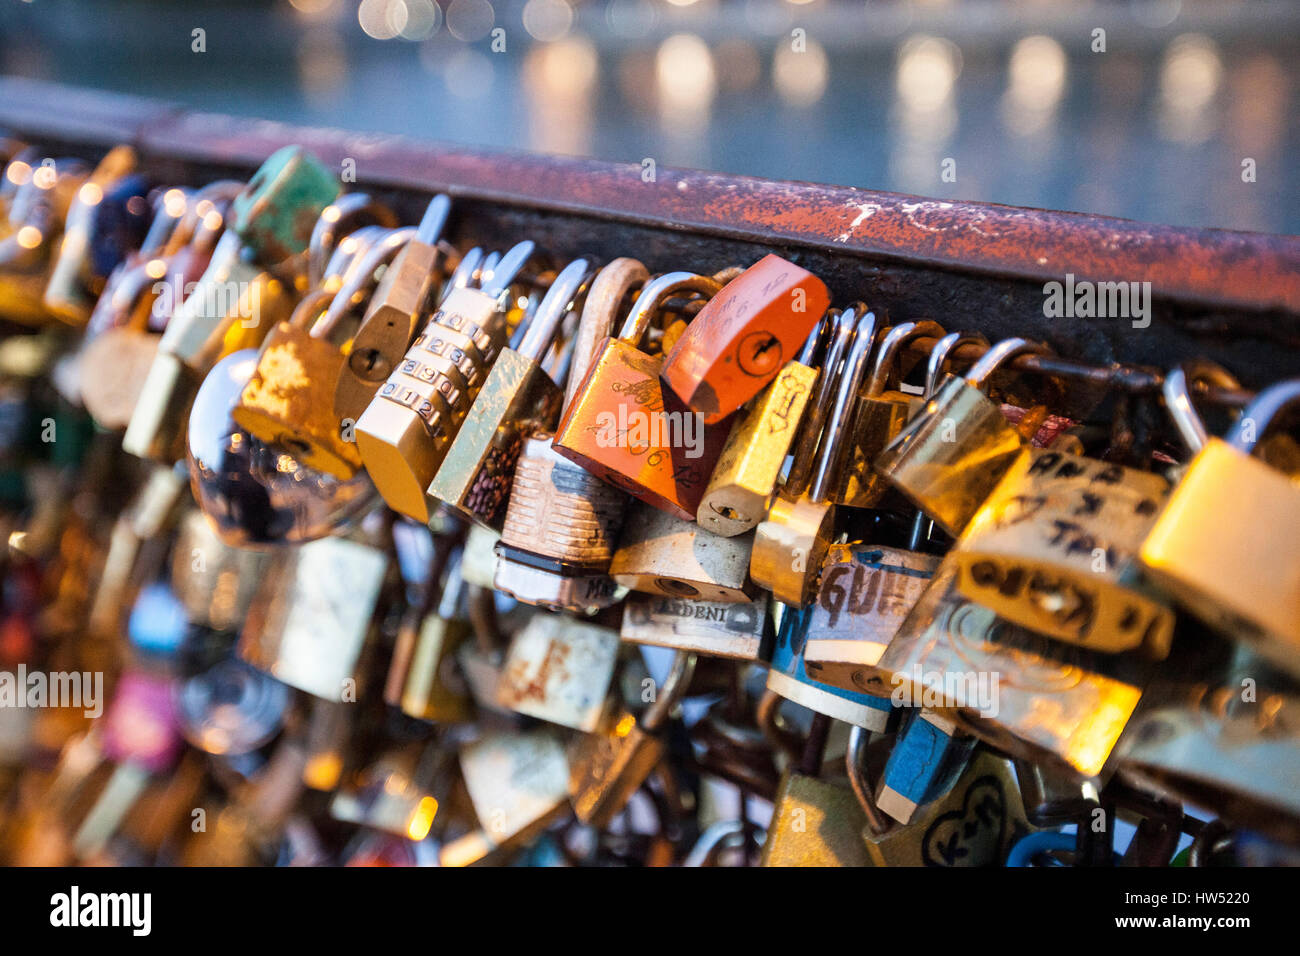 Bloqueos de amor sobre un puente en París, la ciudad del amor. Es un candado que suele bloquear un puente para simbolizar el amor de la pareja. Desgaste de los bloqueos Foto de stock